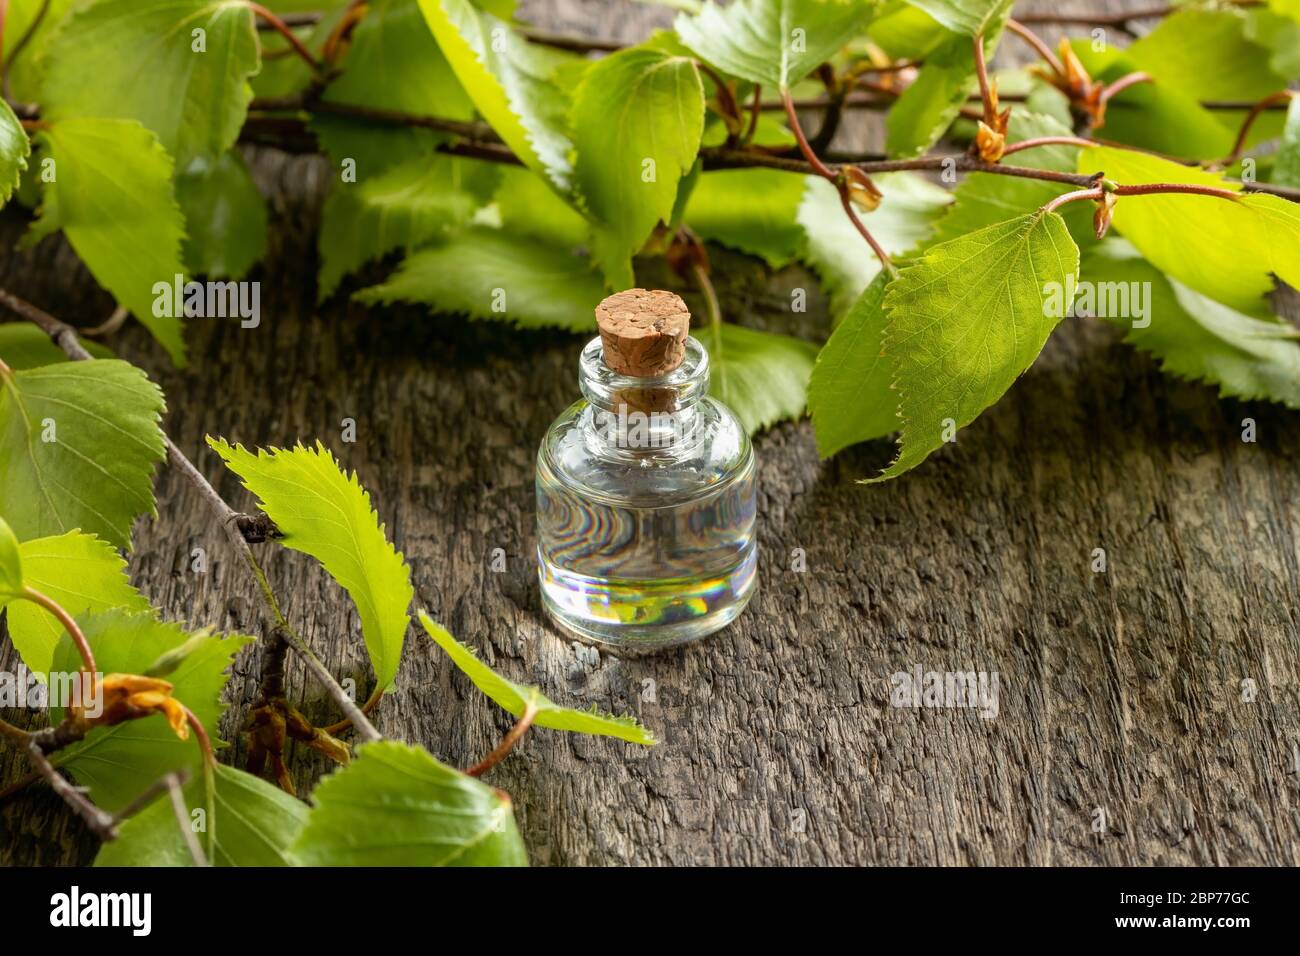 Una botella de aceite esencial con hojas de abedul joven Foto de stock